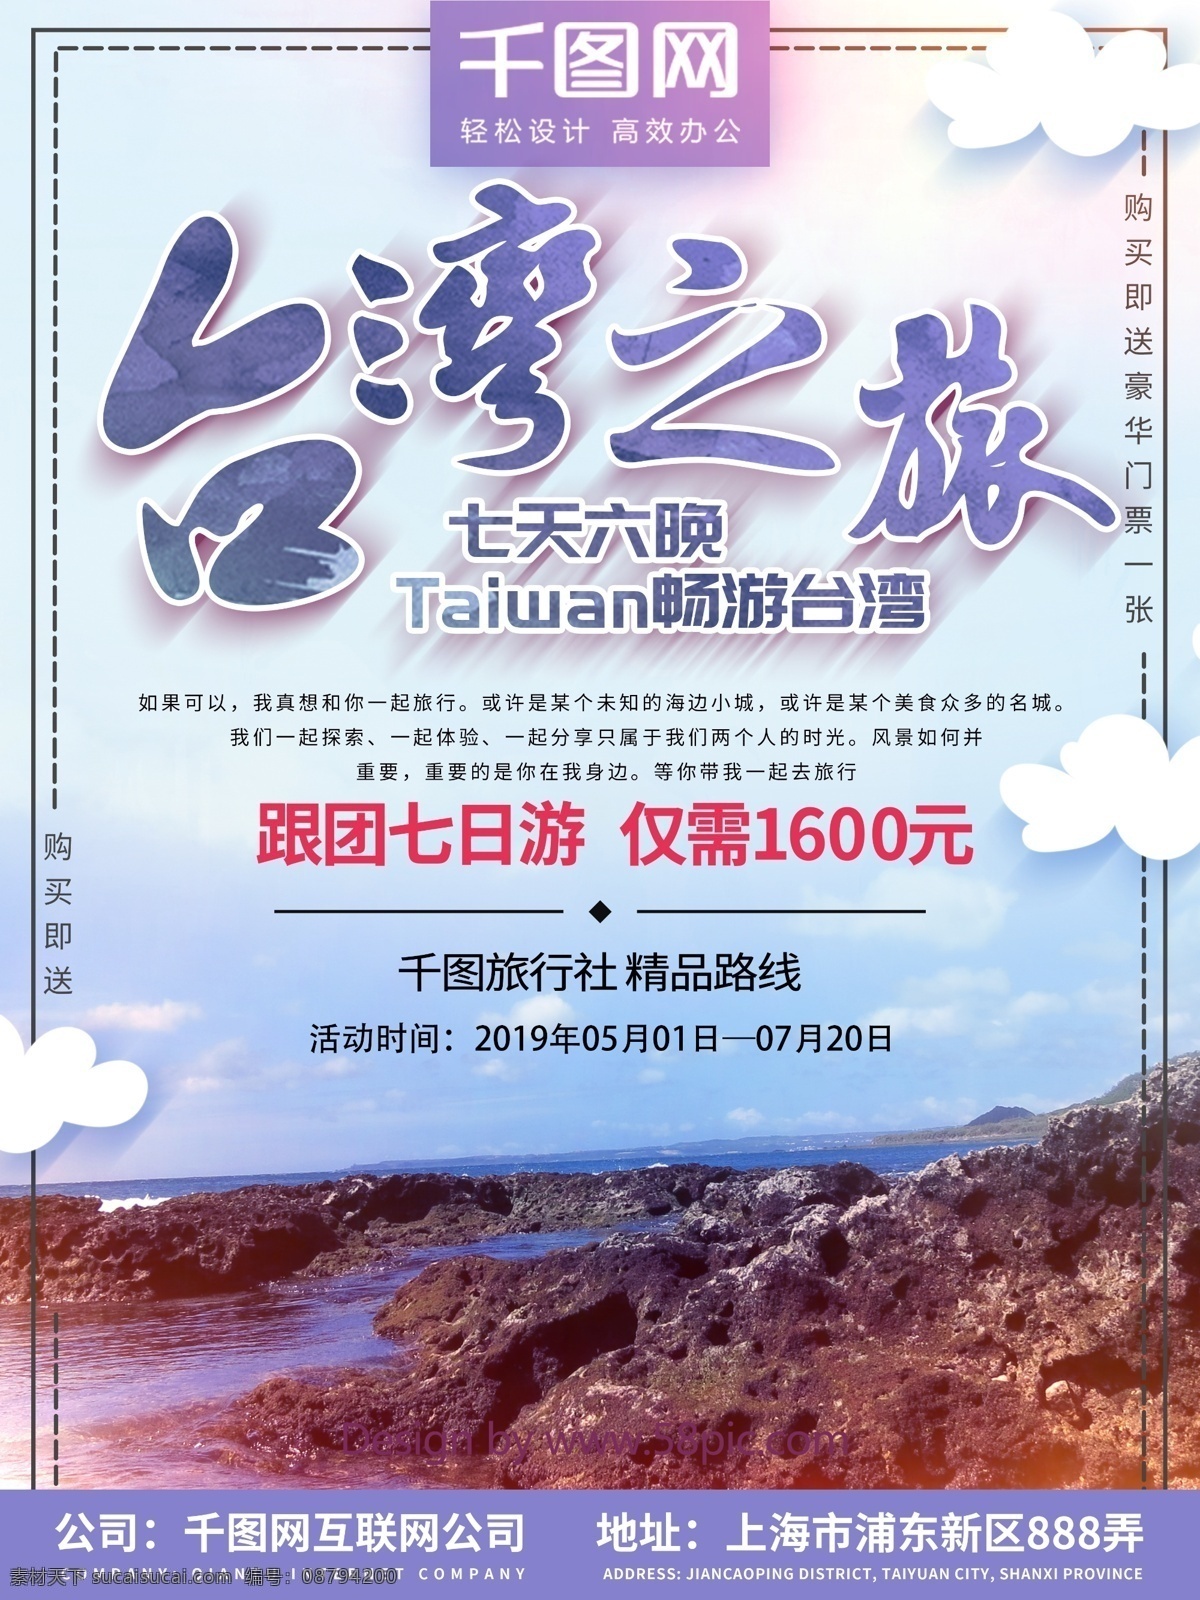 简约 台湾 旅游 海报 清新 宣传 印象 原创 台湾建筑 台湾旅游 台湾旅游广告 日月潭 台湾文化